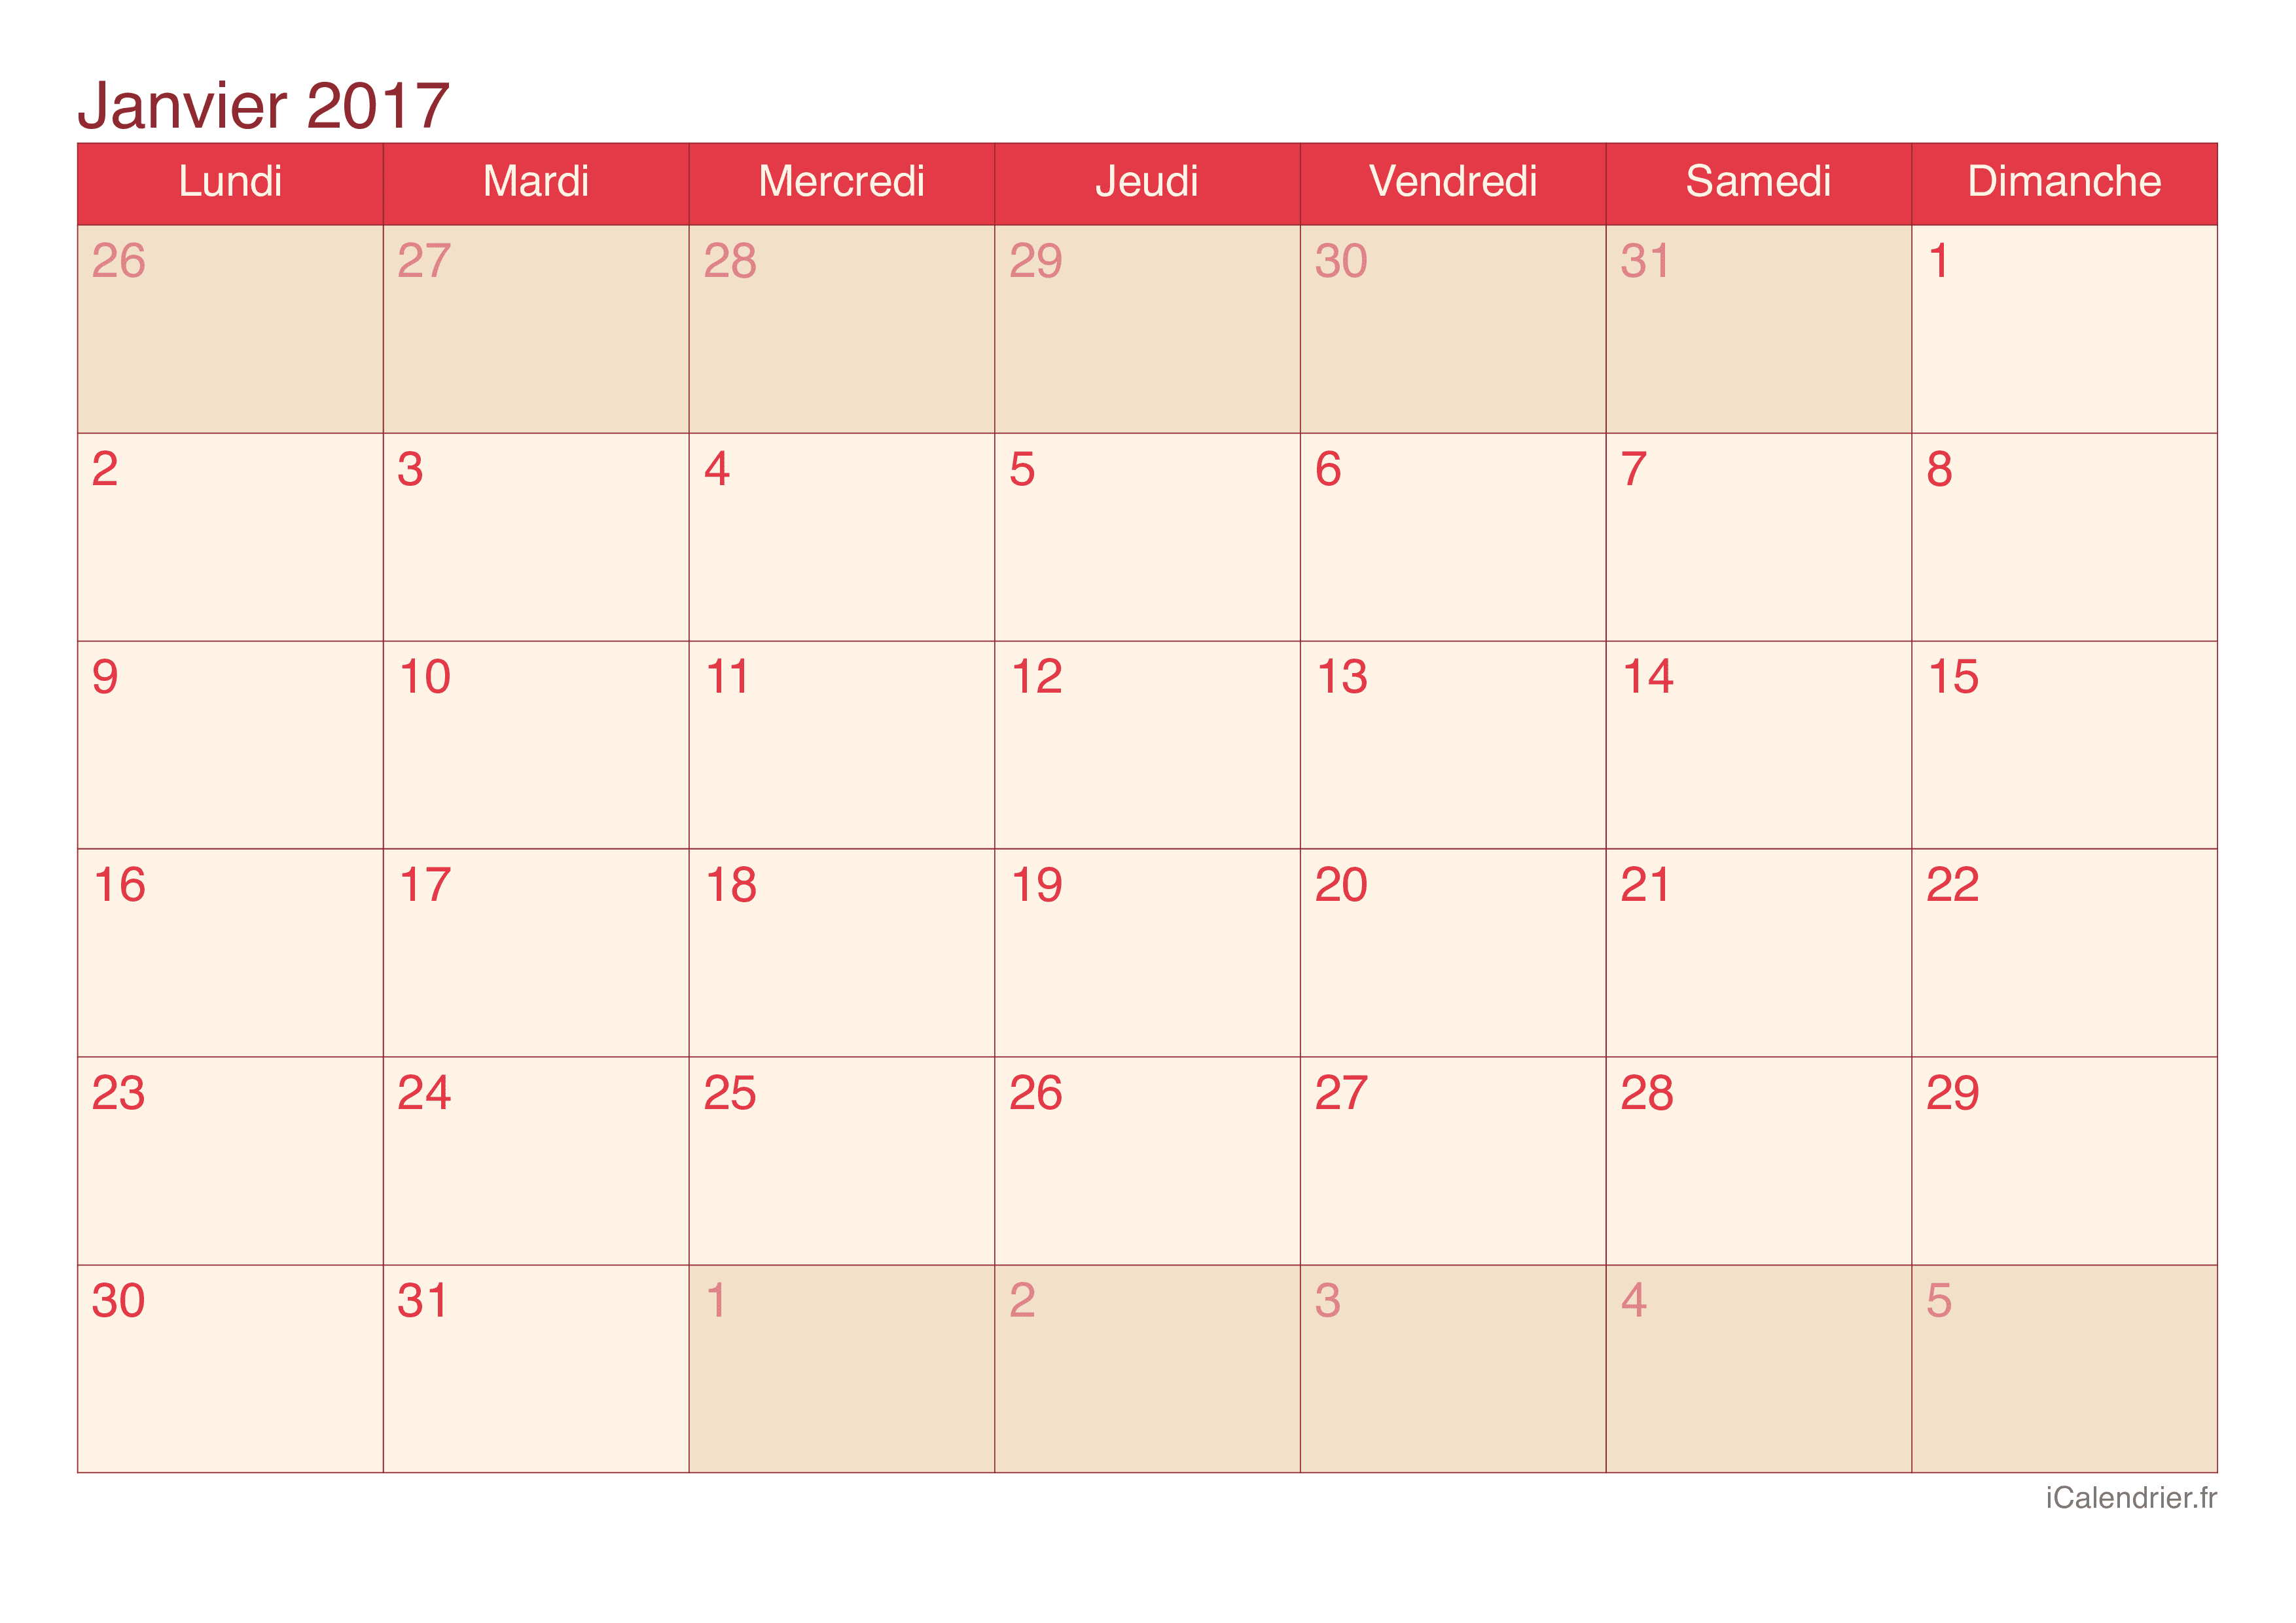 Calendrier par mois 2017 - Cherry